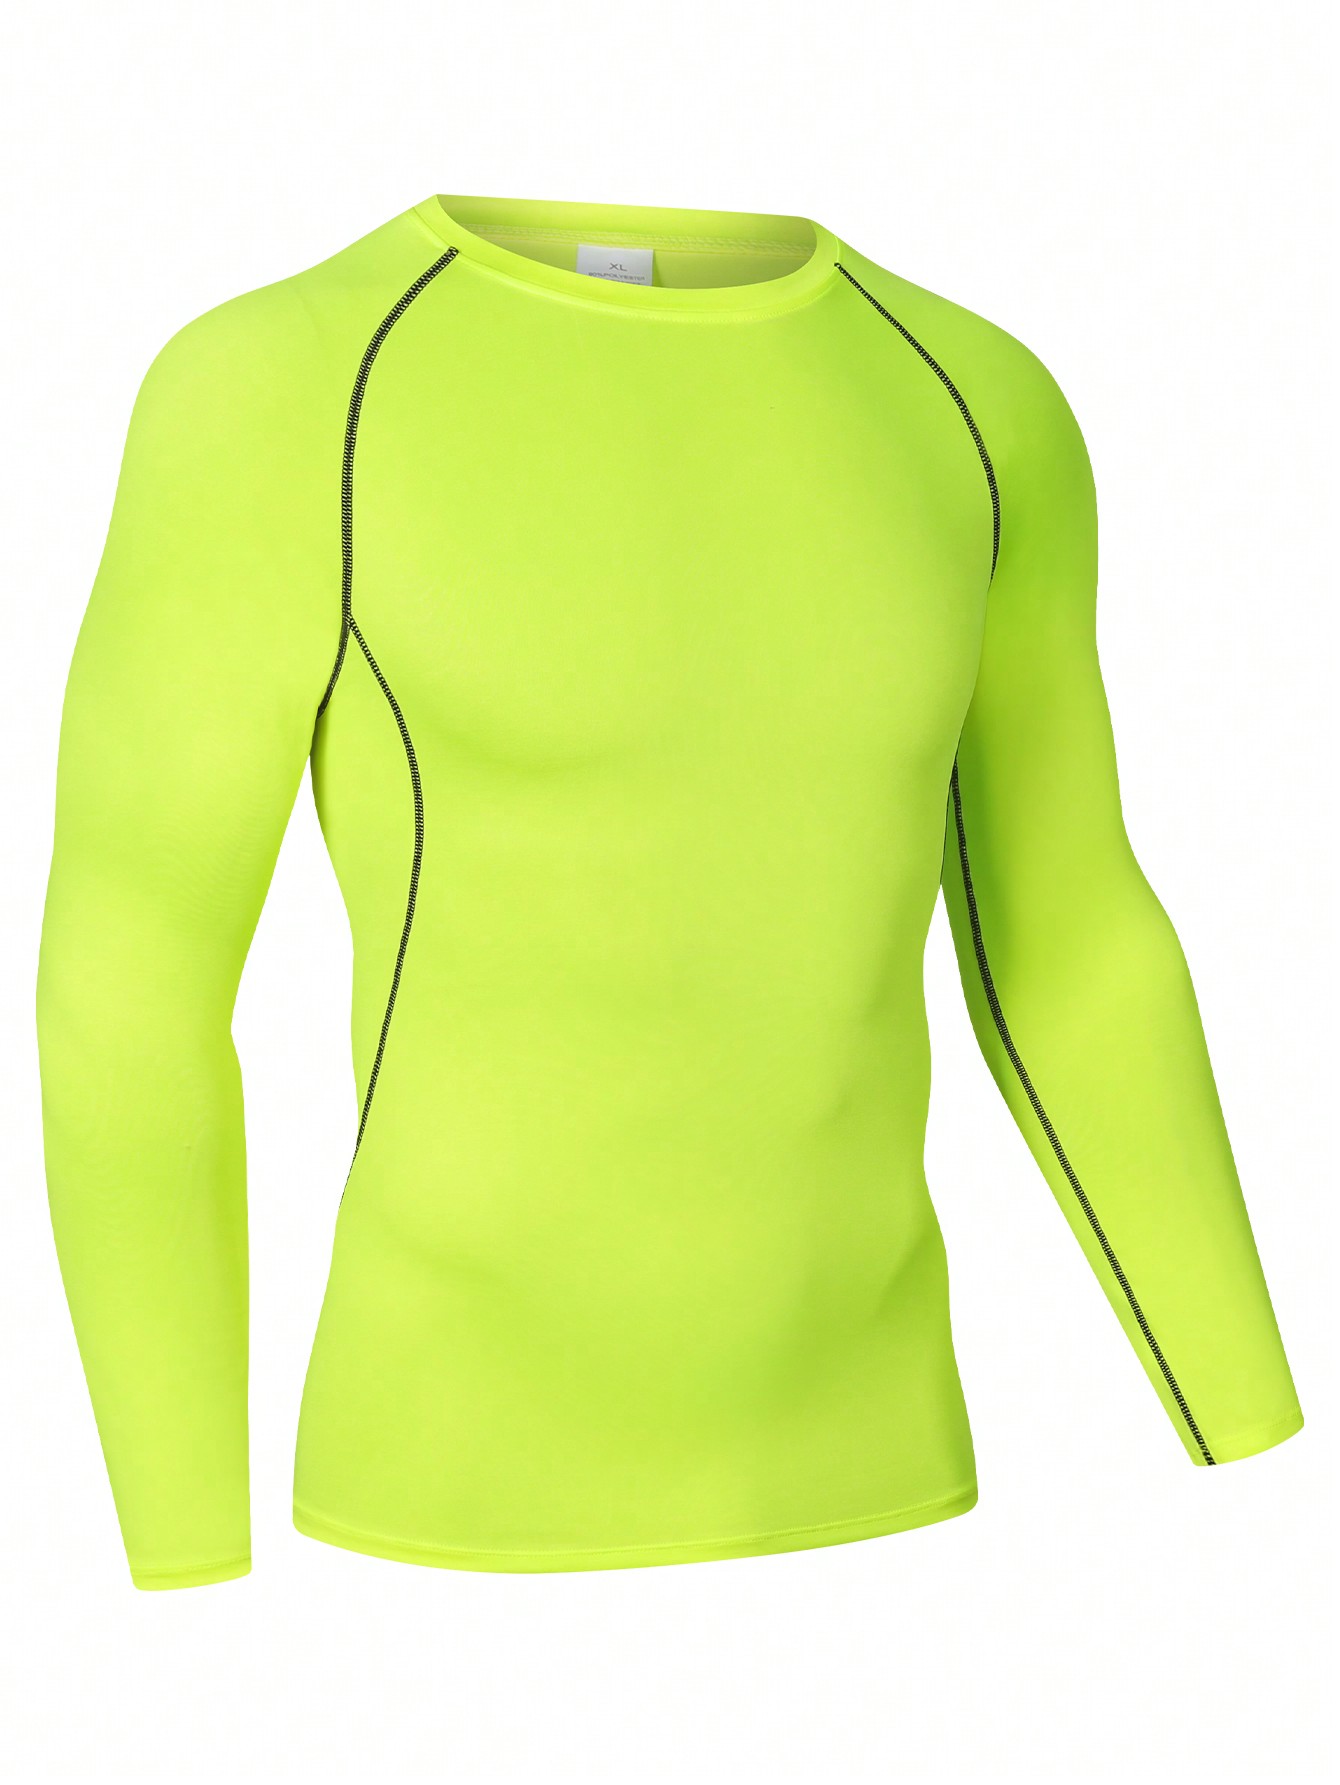 Мужская эластичная компрессионная рубашка для фитнеса с длинными рукавами, зеленый футболка мужская быстросохнущая дышащая короткий рукав для тренировок фитнеса бодибилдинга спортзала майка для бега